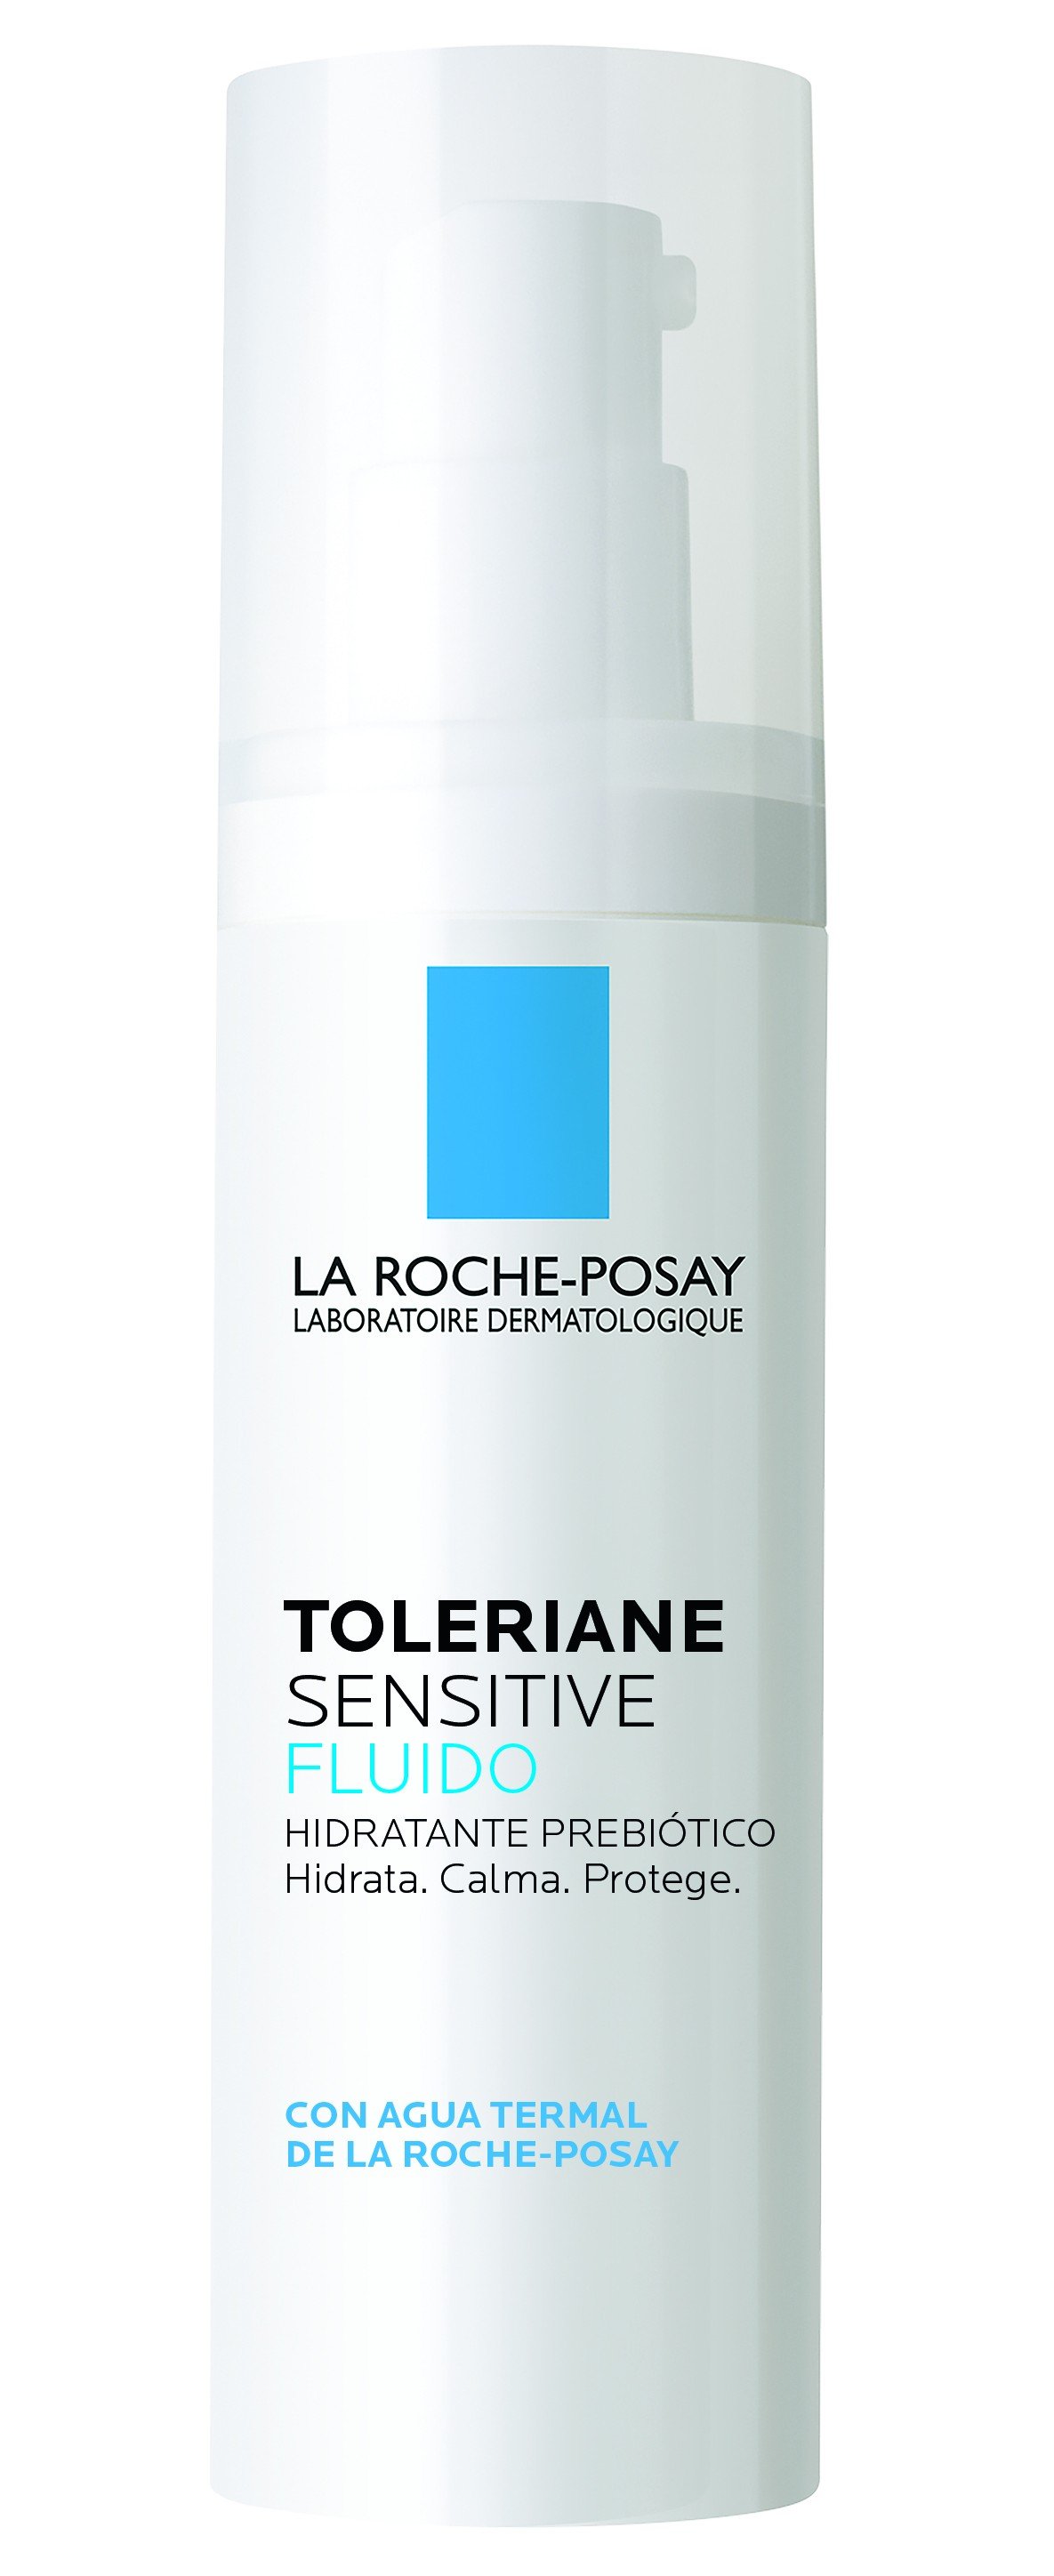 La Roche-Posay Toleriane Snesitive Fluido, 40ml.